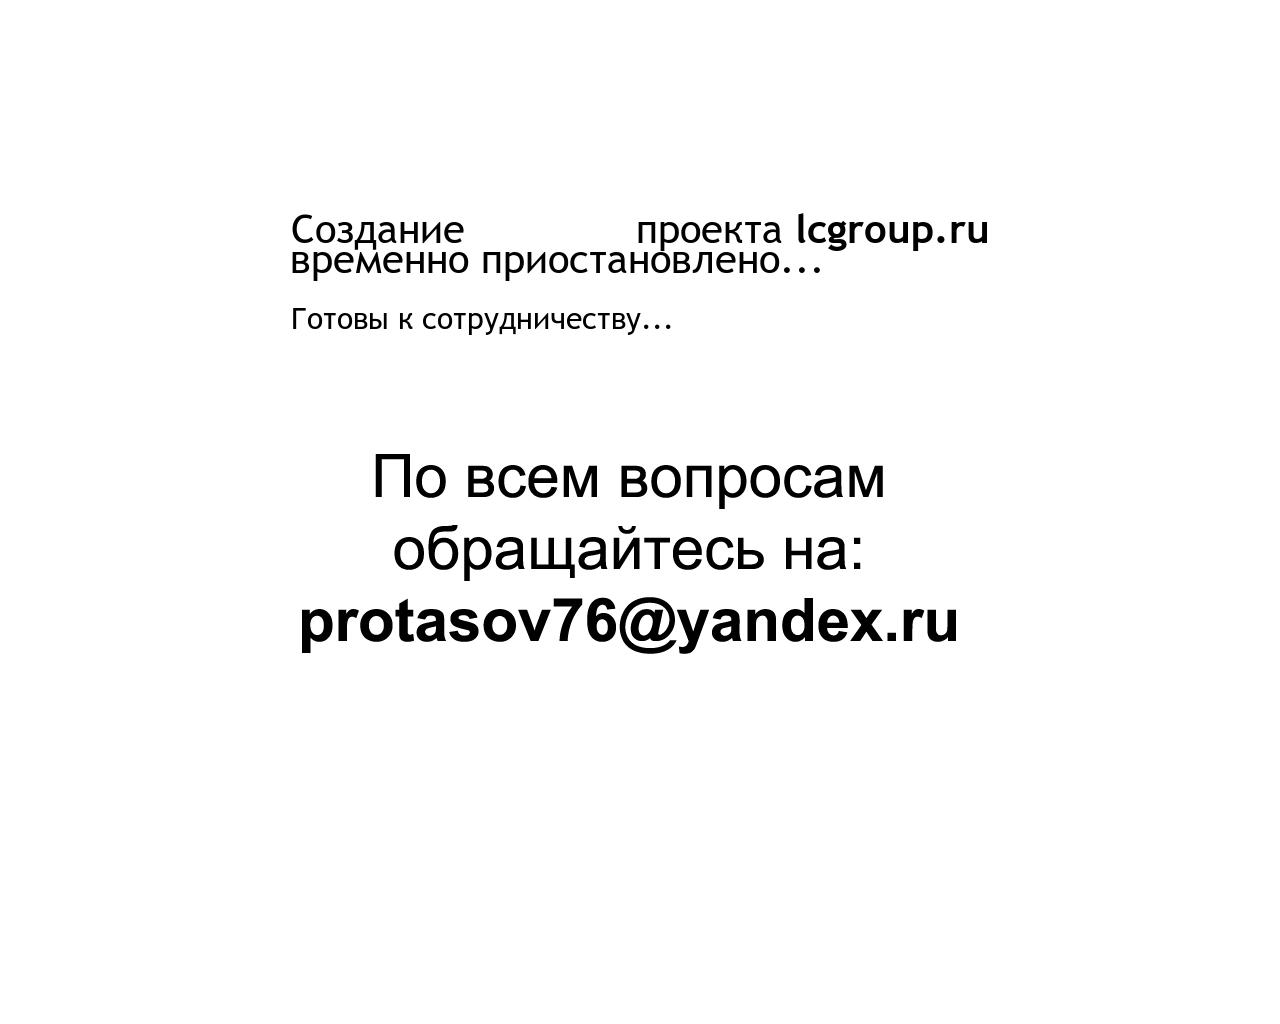 Изображение сайта lcgroup.ru в разрешении 1280x1024